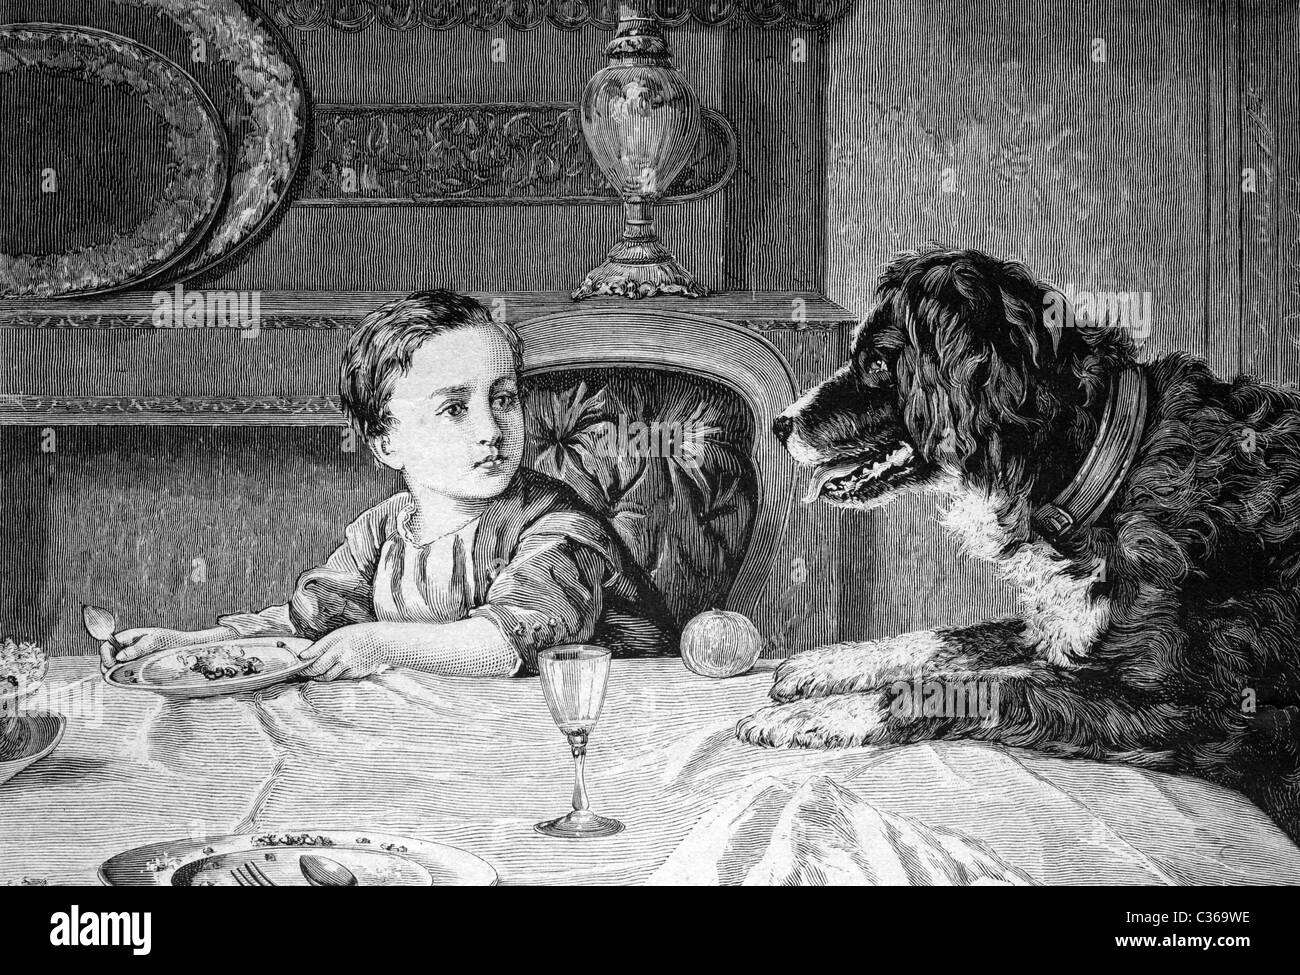 Perro mendigando en la tabla, imagen histórica 1886 Foto de stock